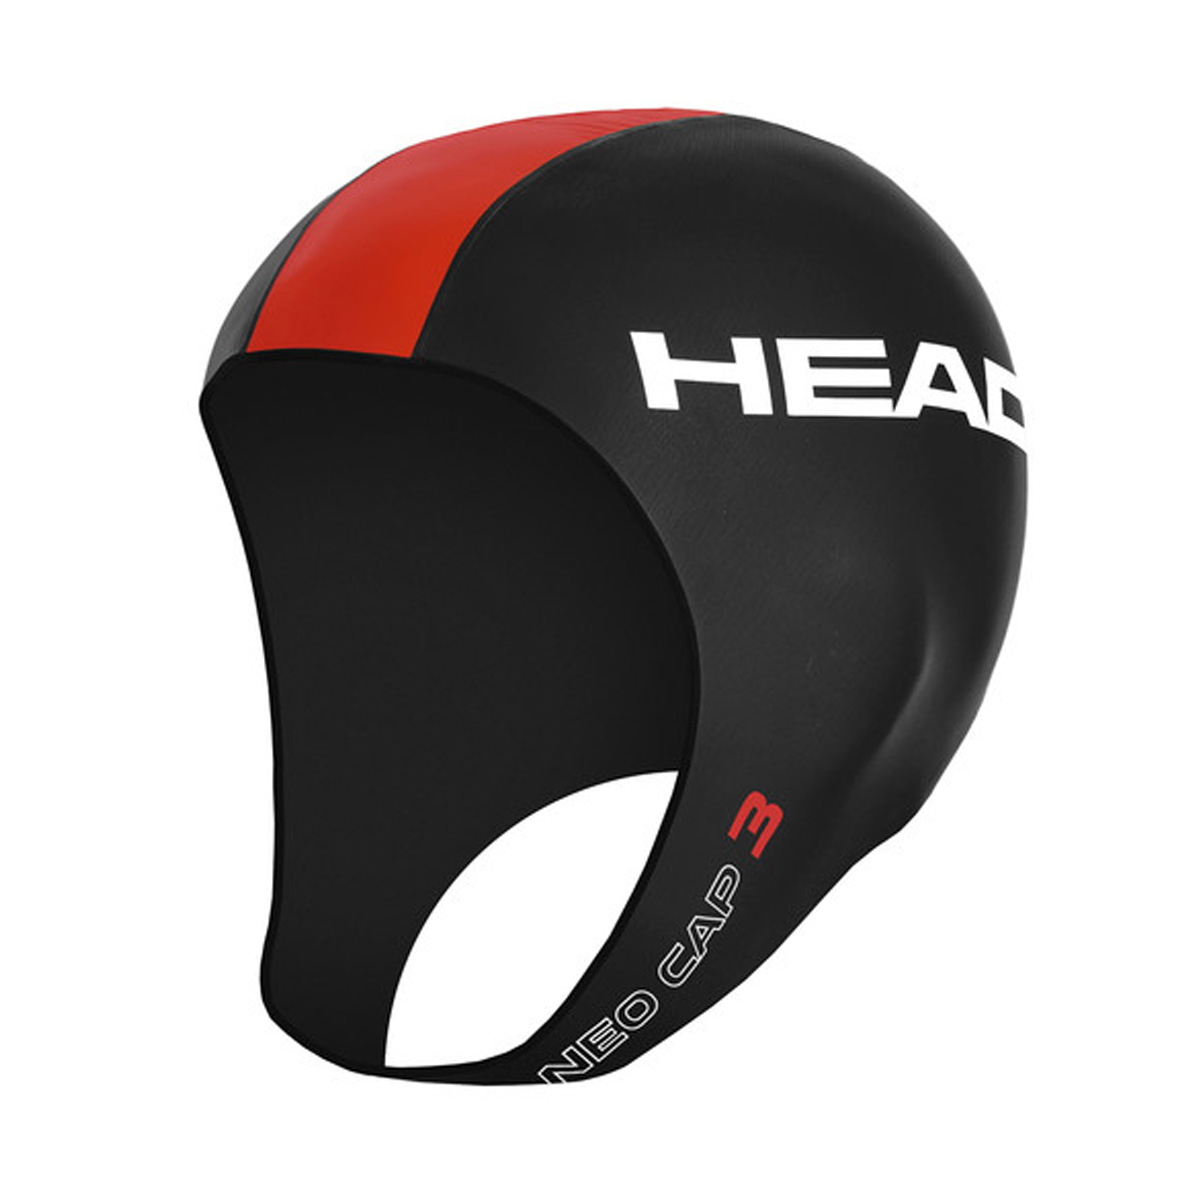 Head Neo Cap 3 - Melns / sarkans